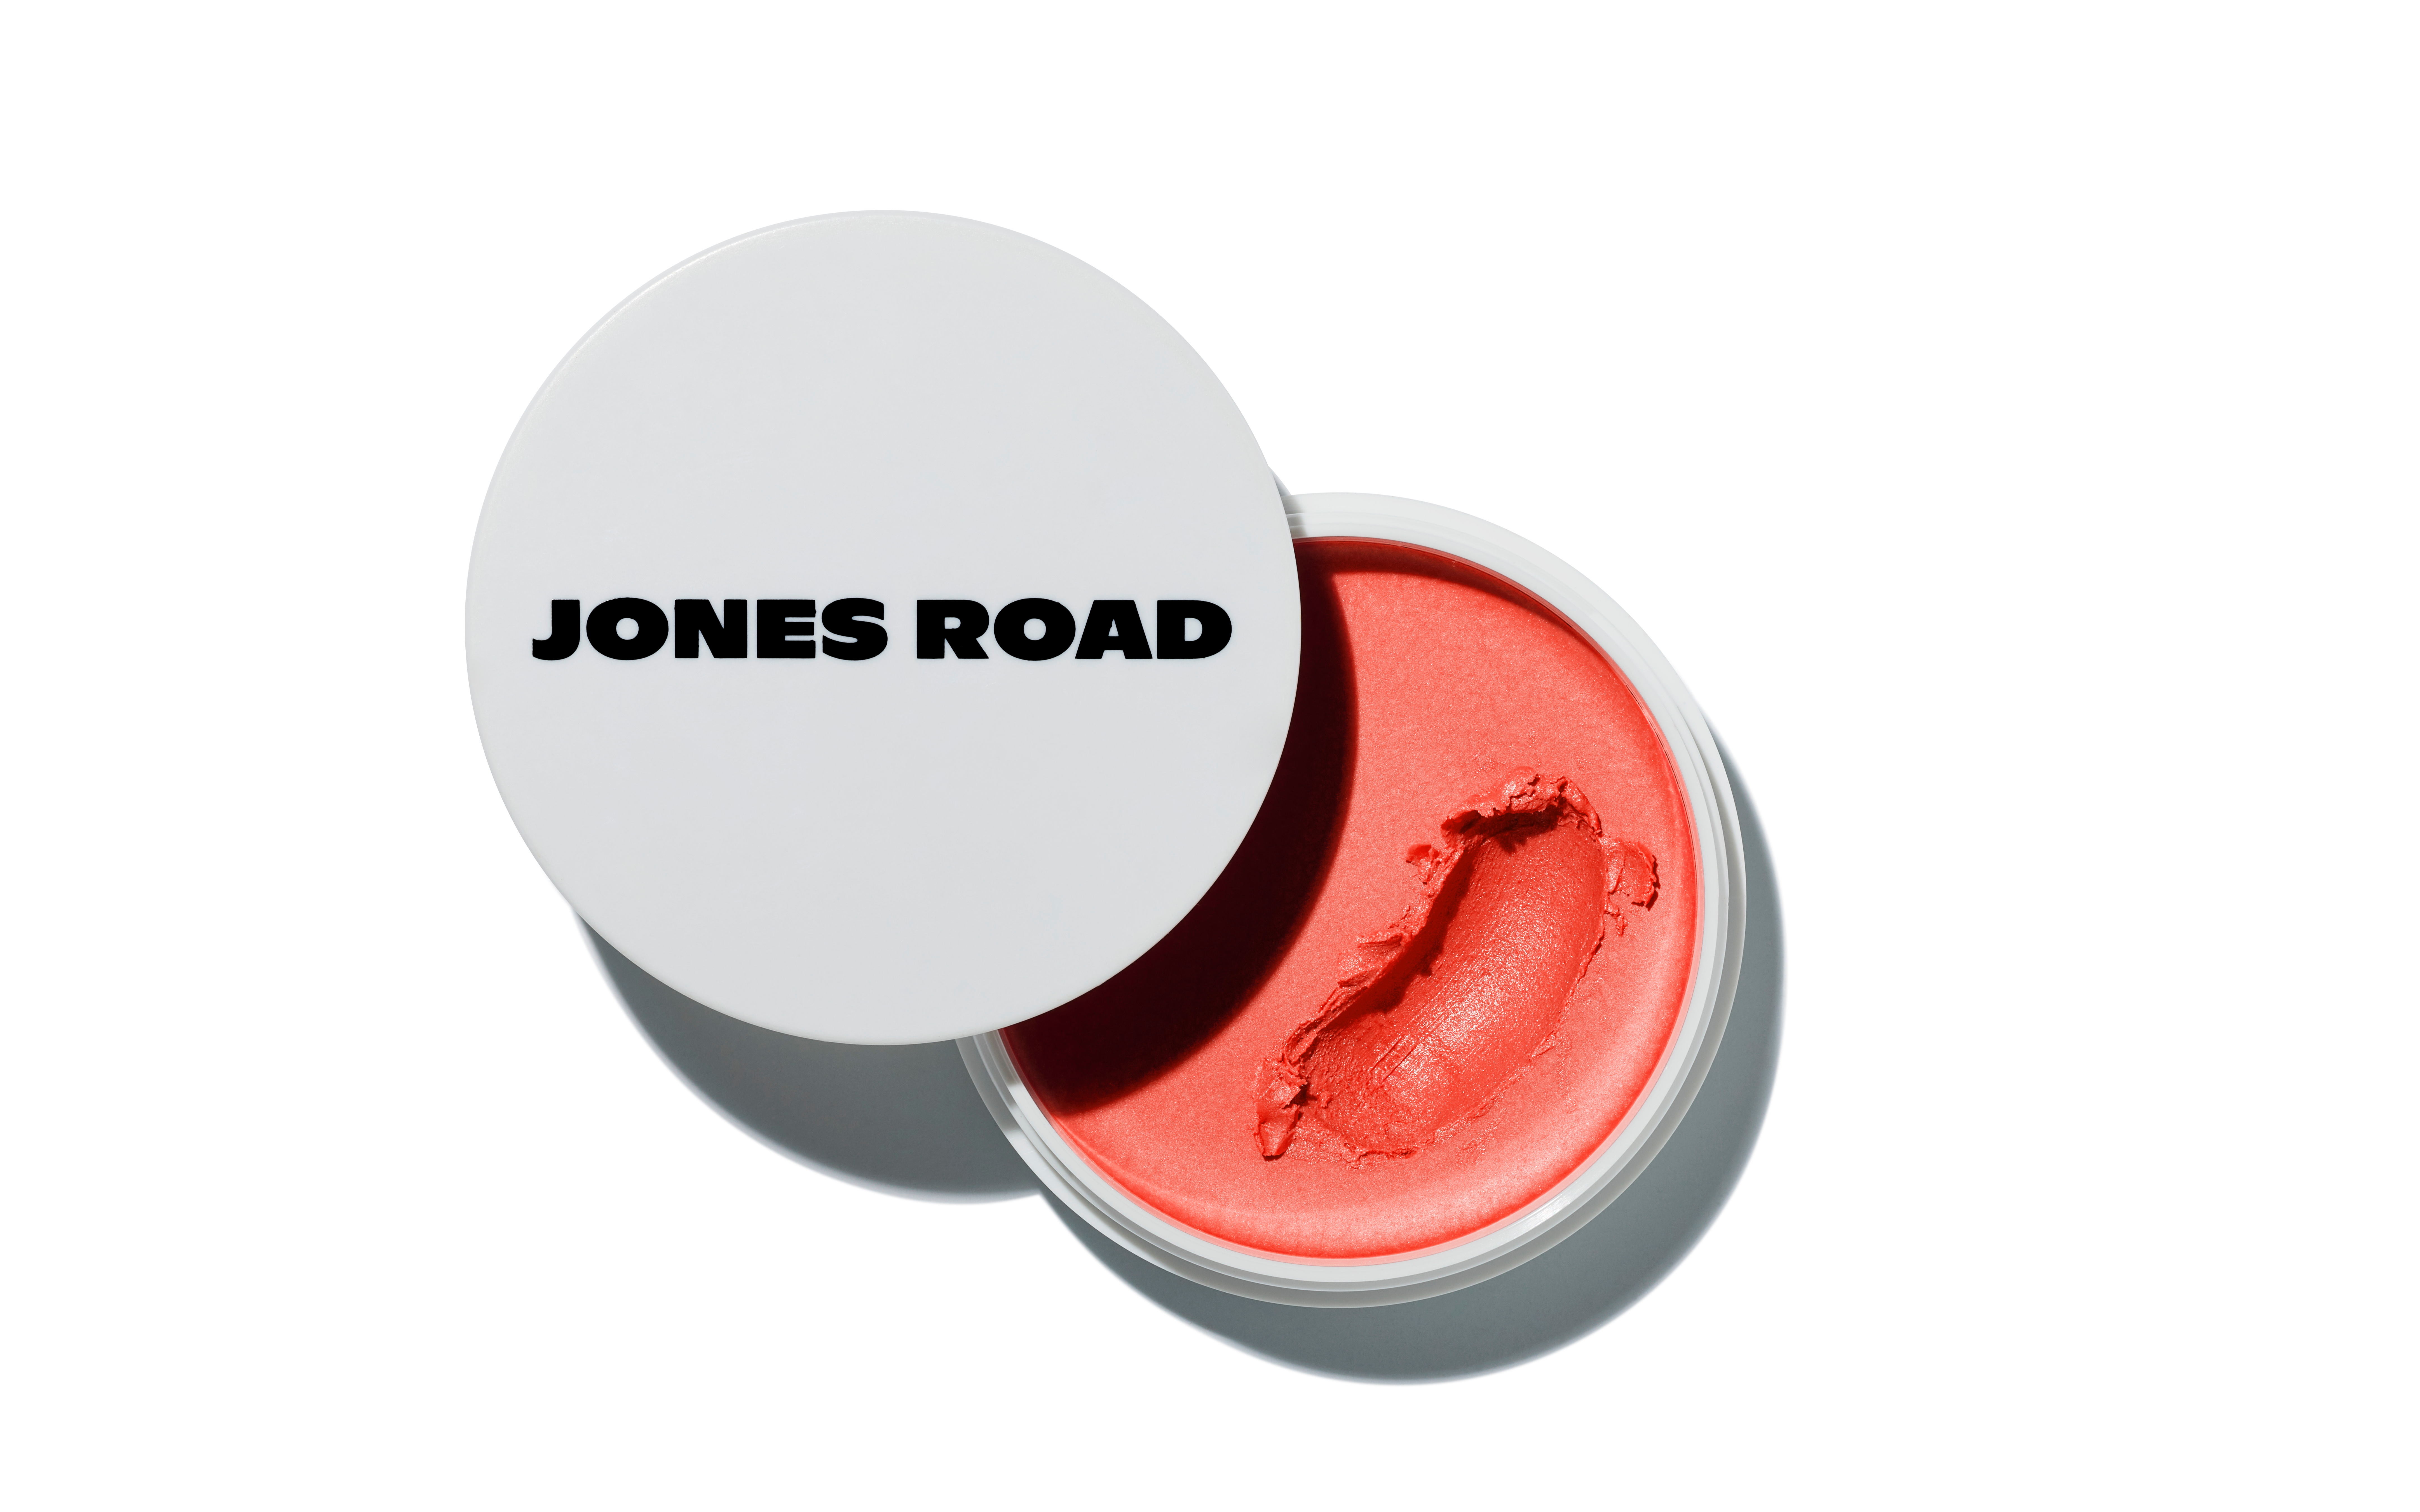 JONES ROAD